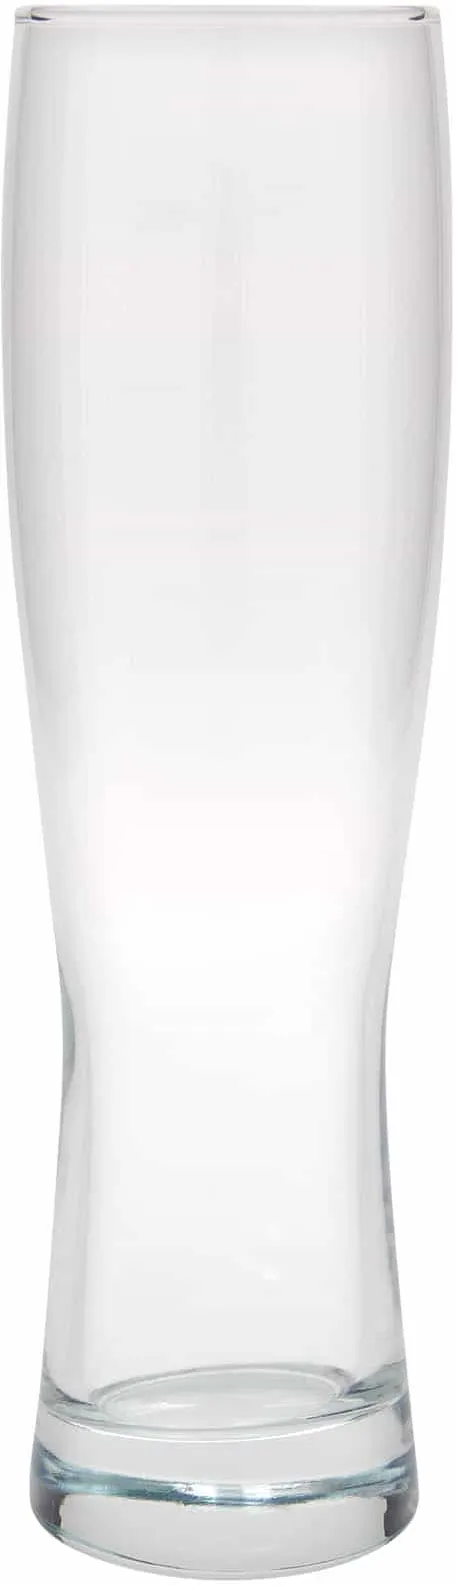 Vaso de cerveza 'Monaco' de 500 ml, vidrio